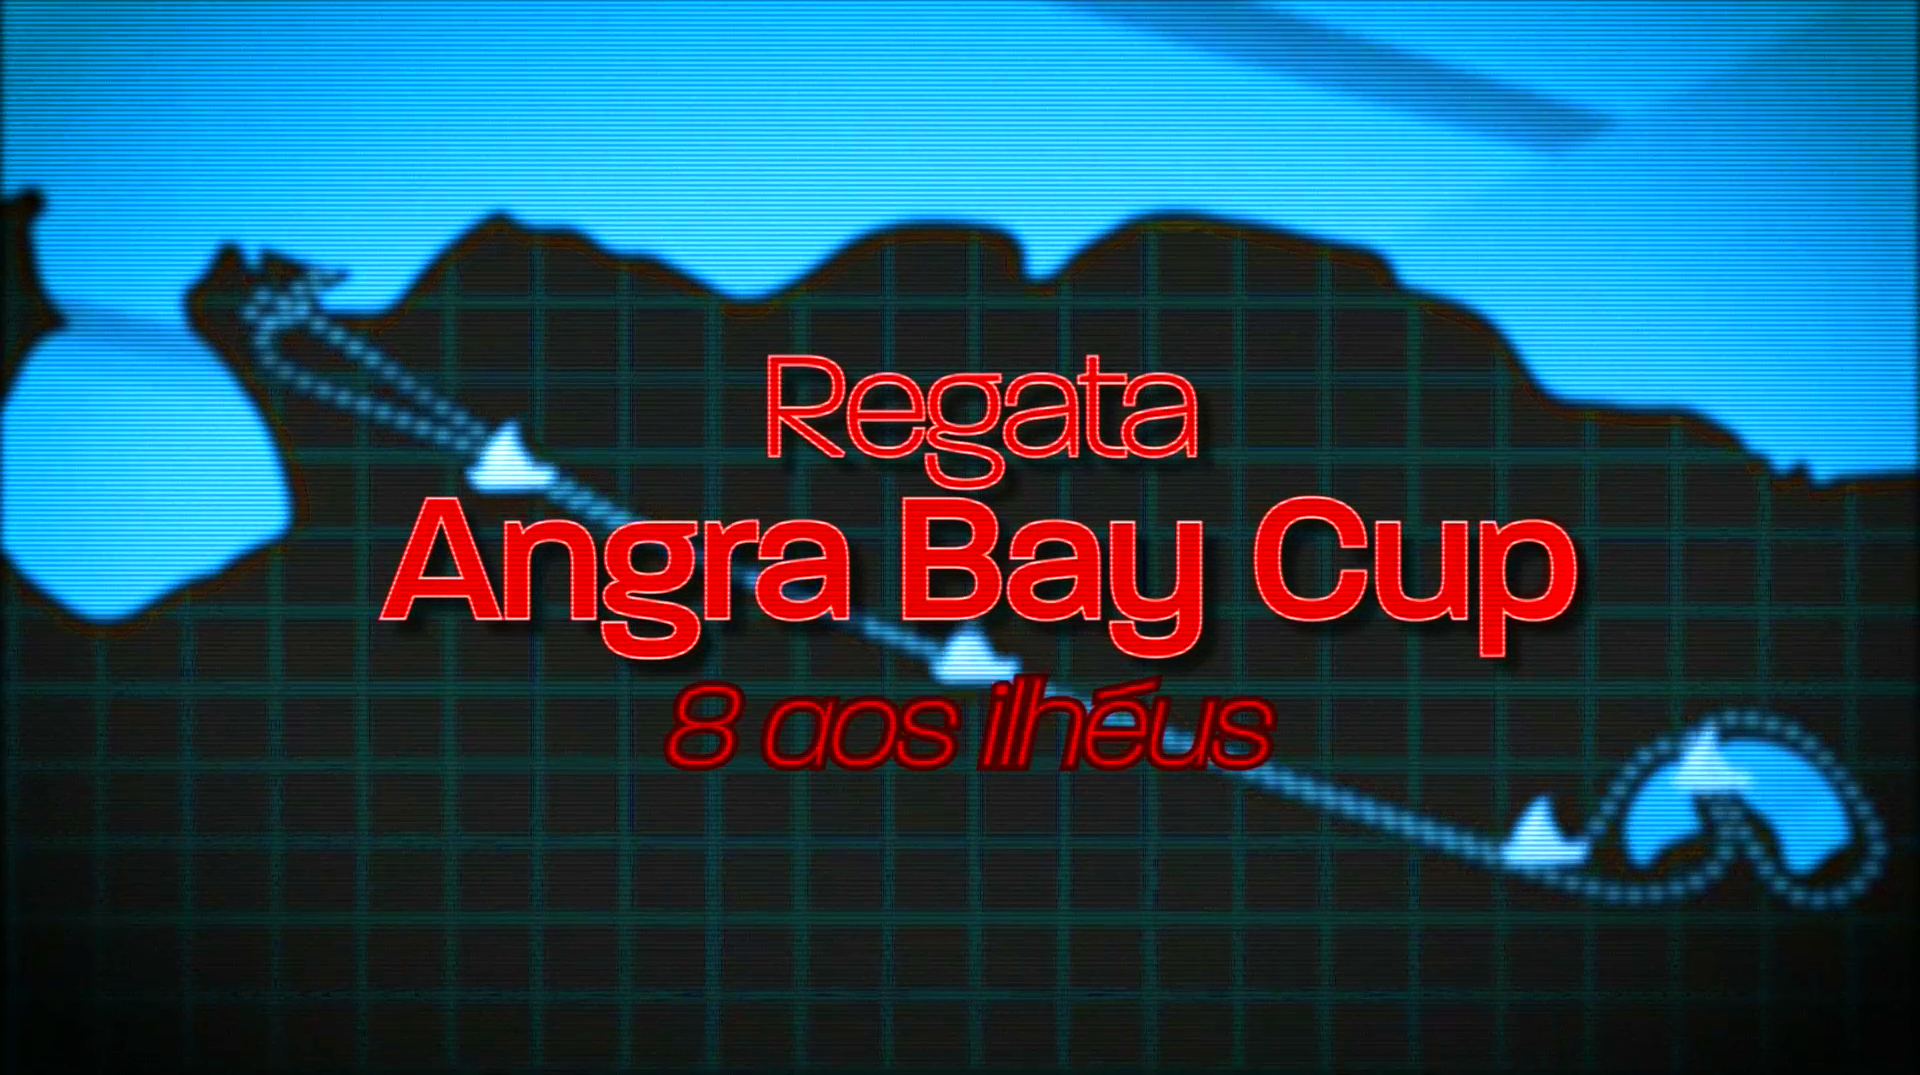 Regata  Angra Bay Cup/ 8 aos Ilhus - Resumo